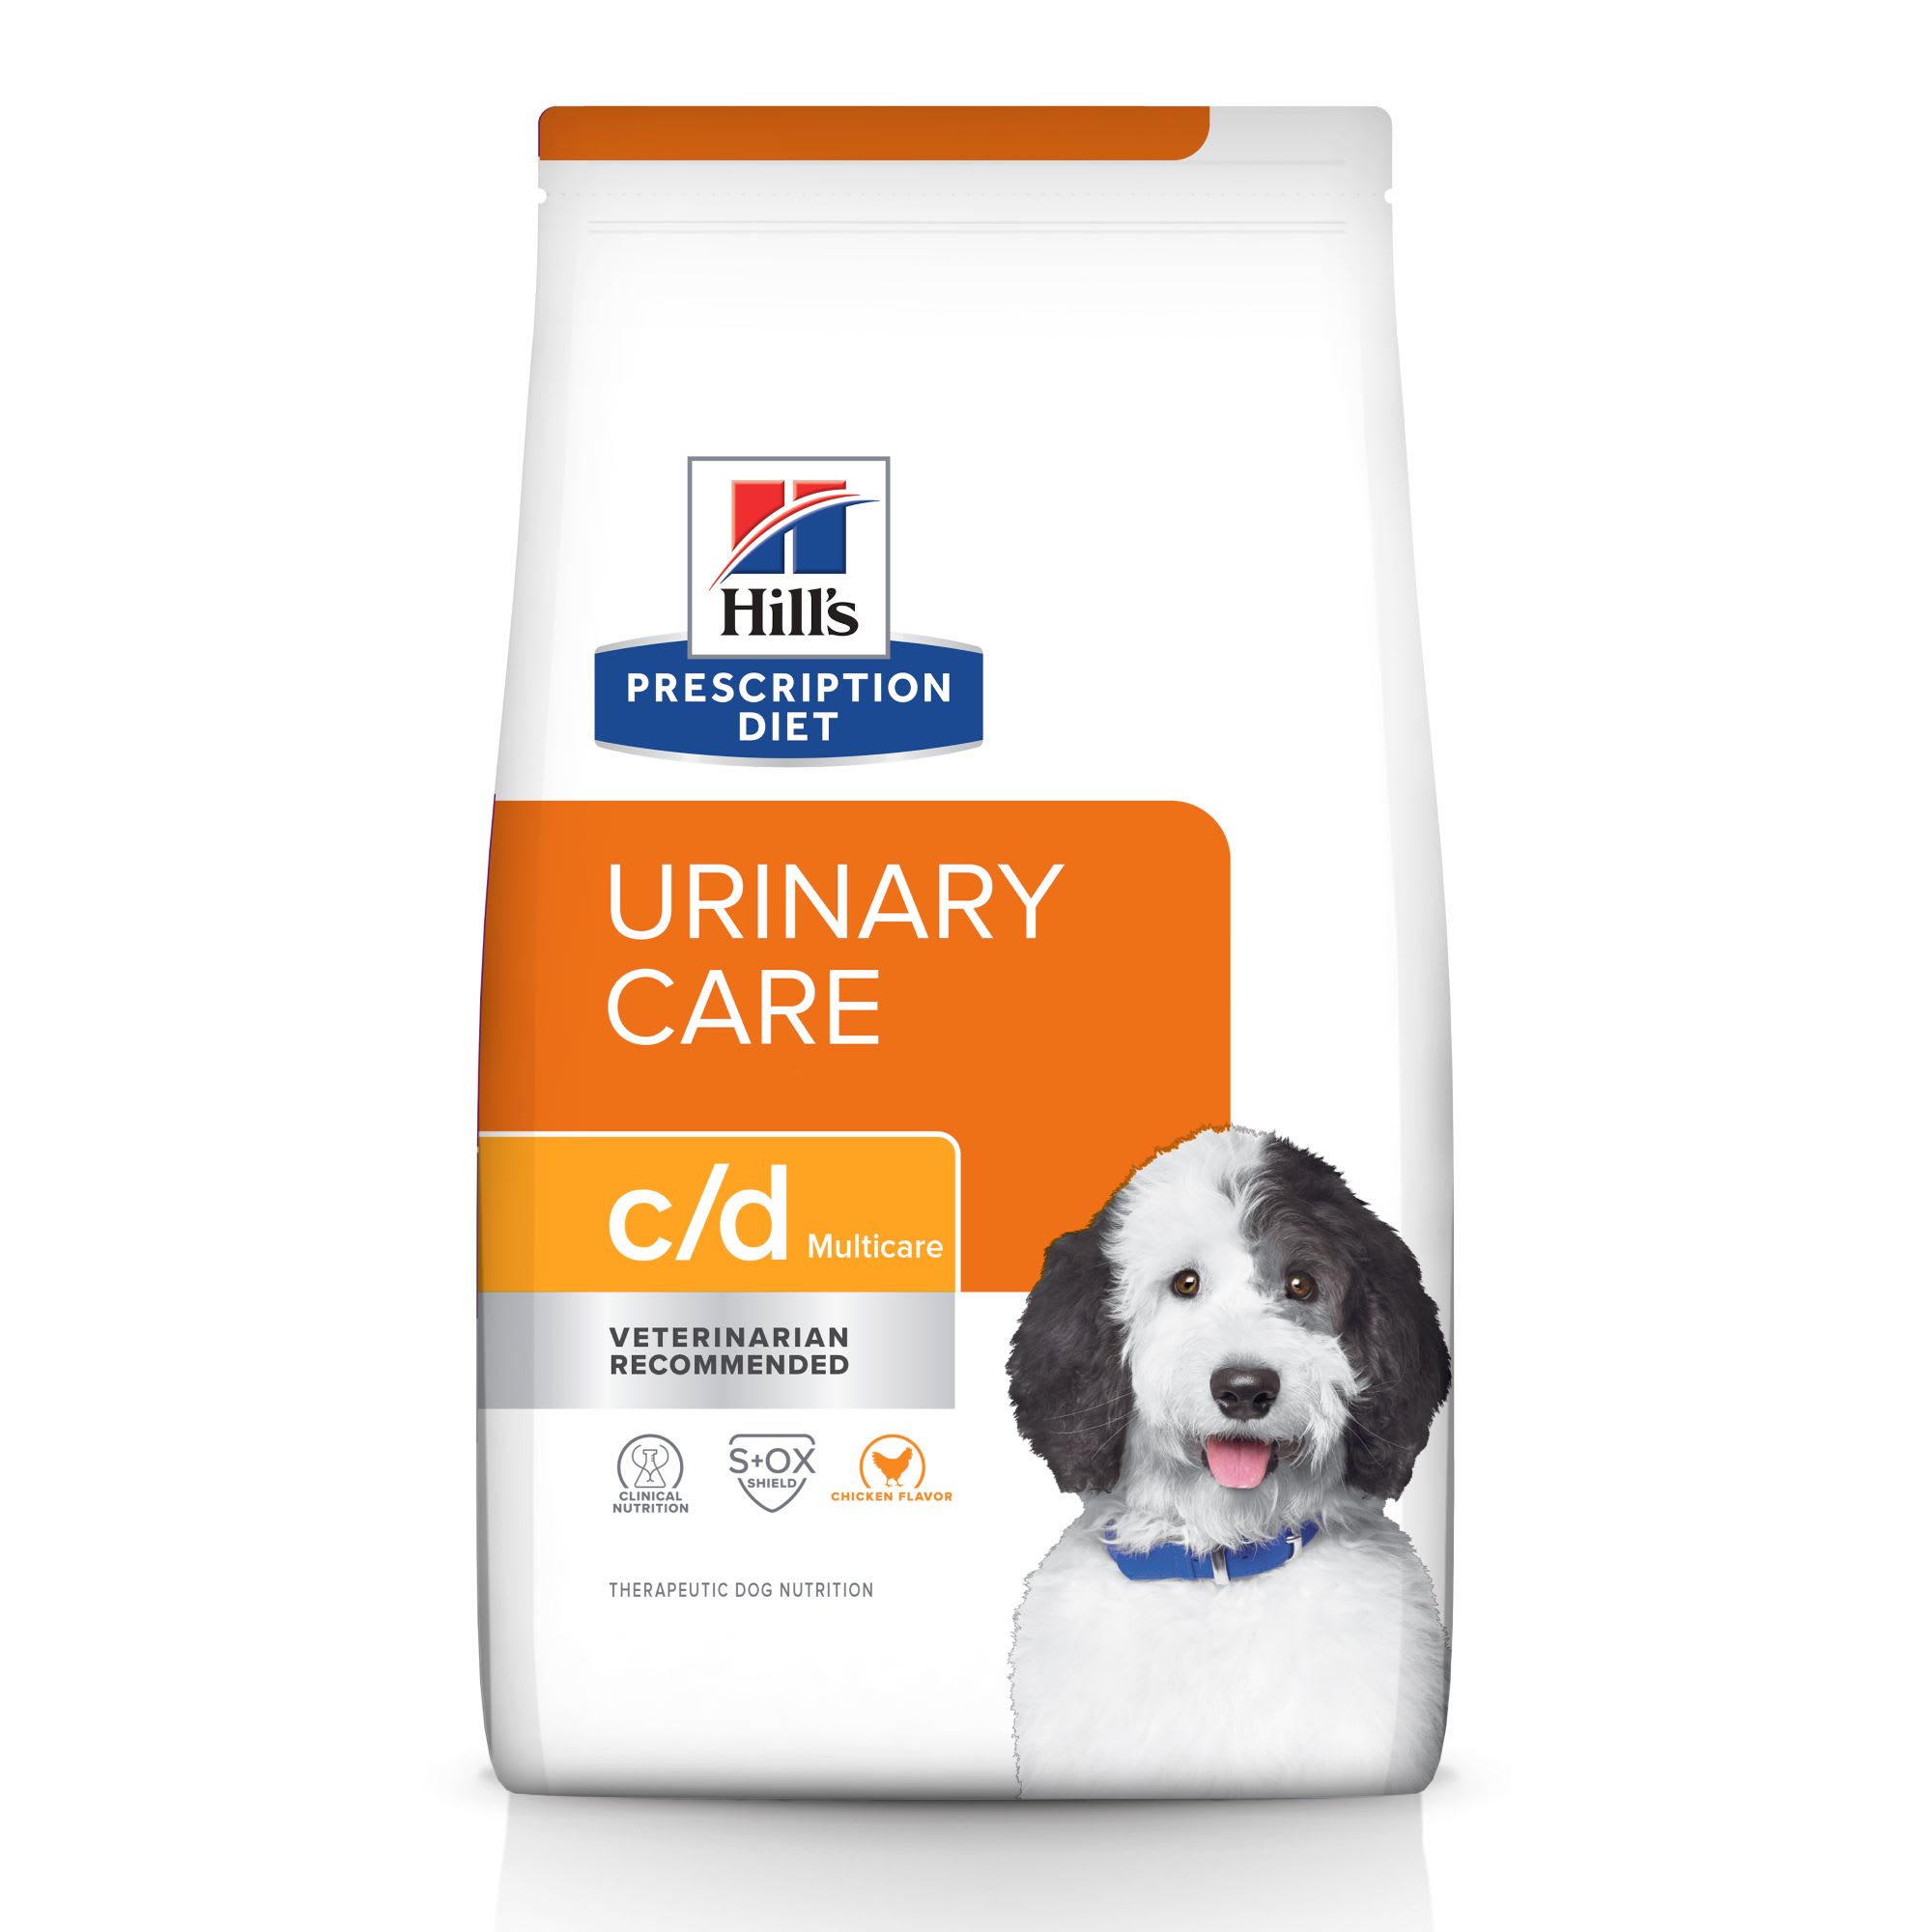 urinary care dog food non prescription